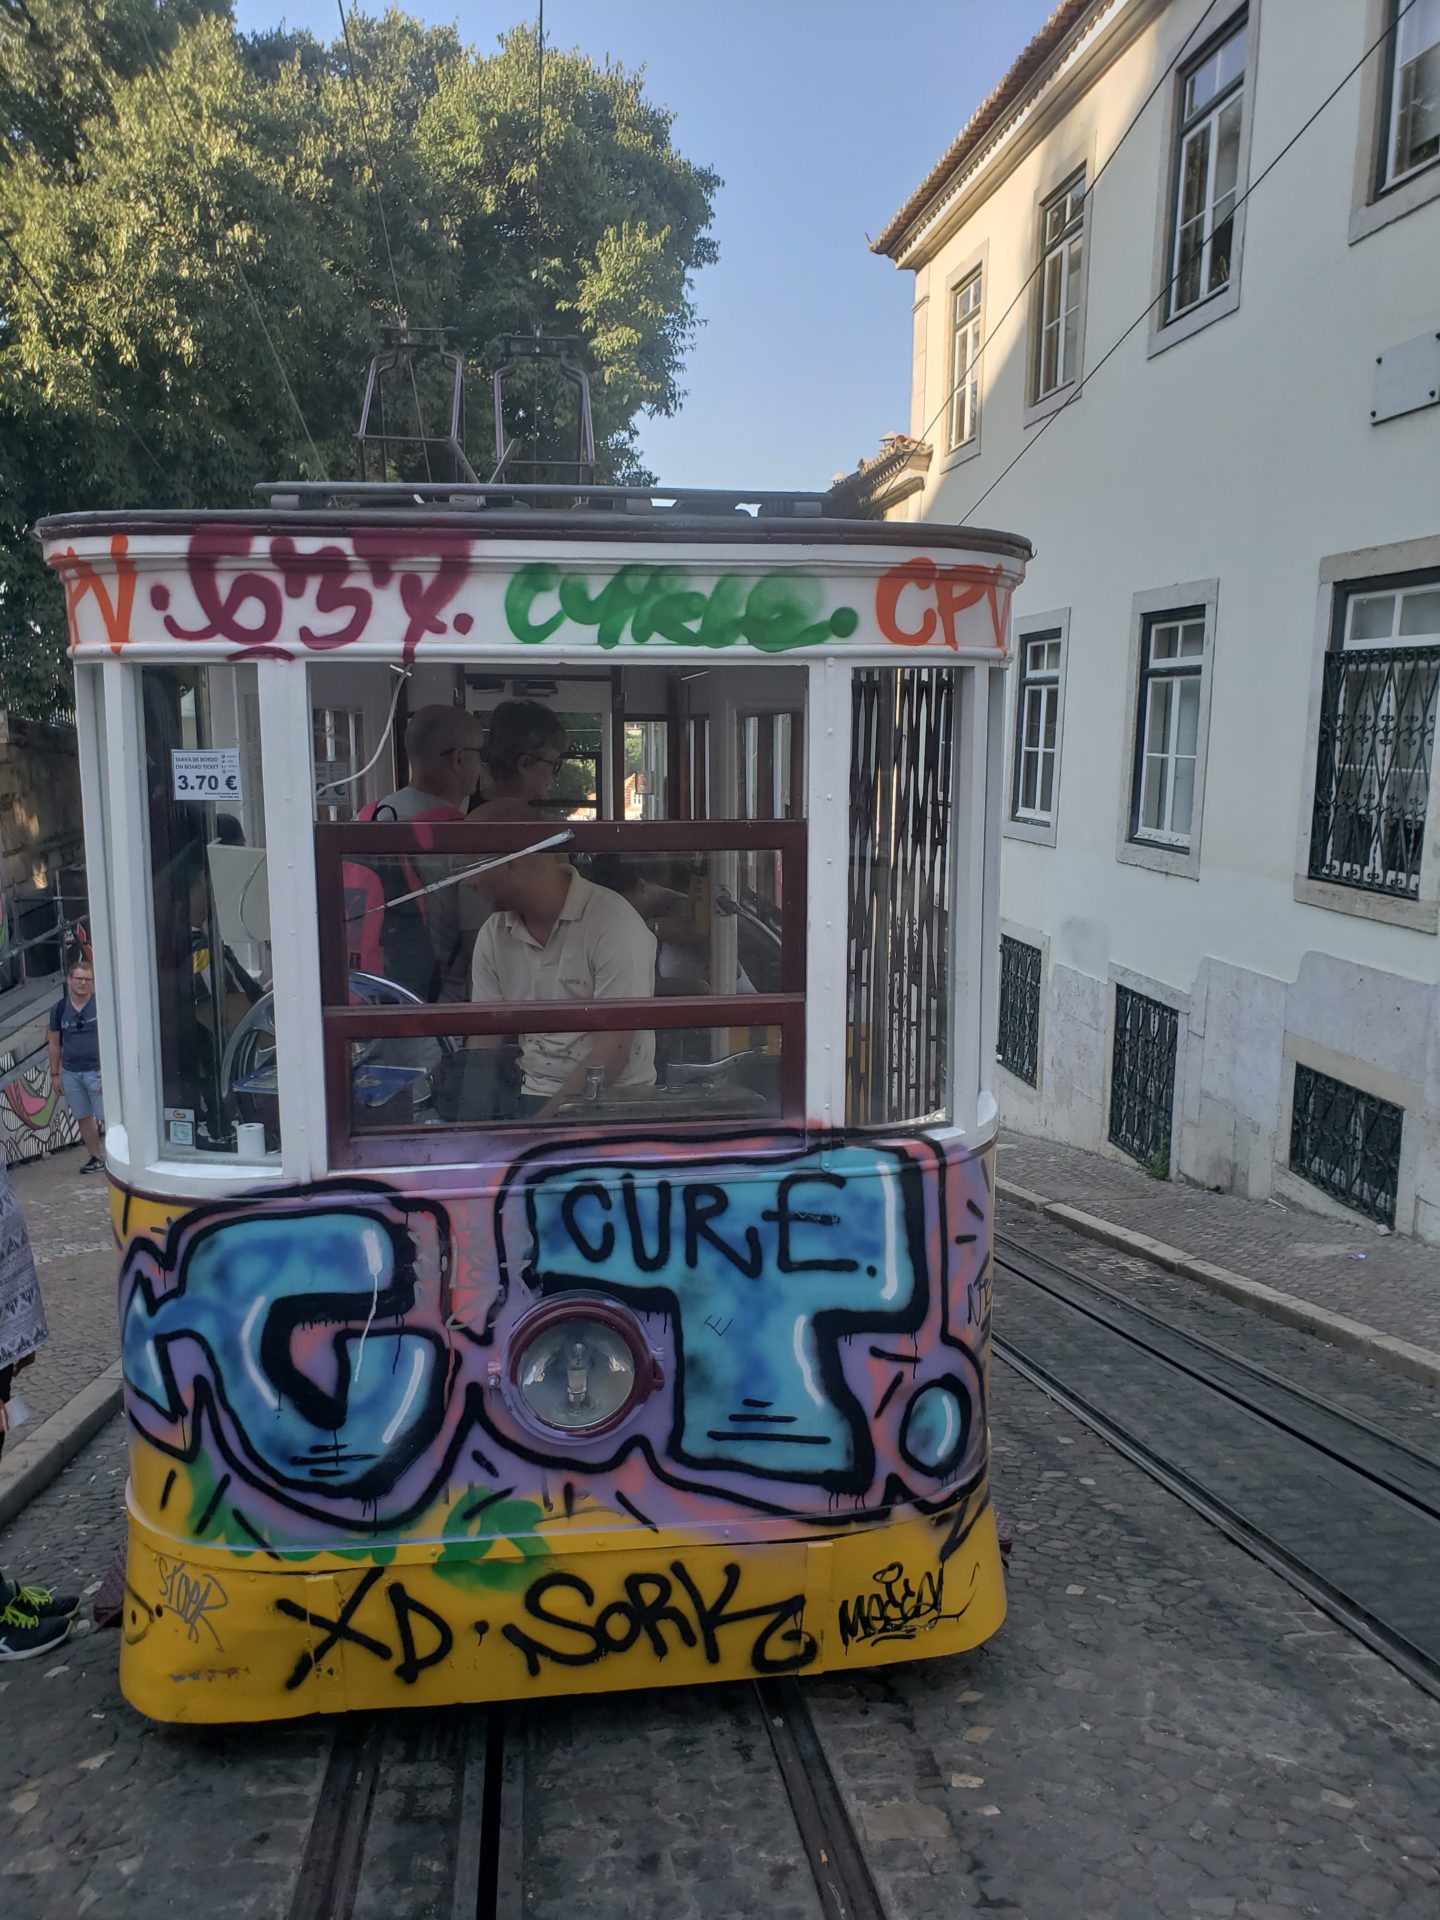 a trolley car with graffiti on it